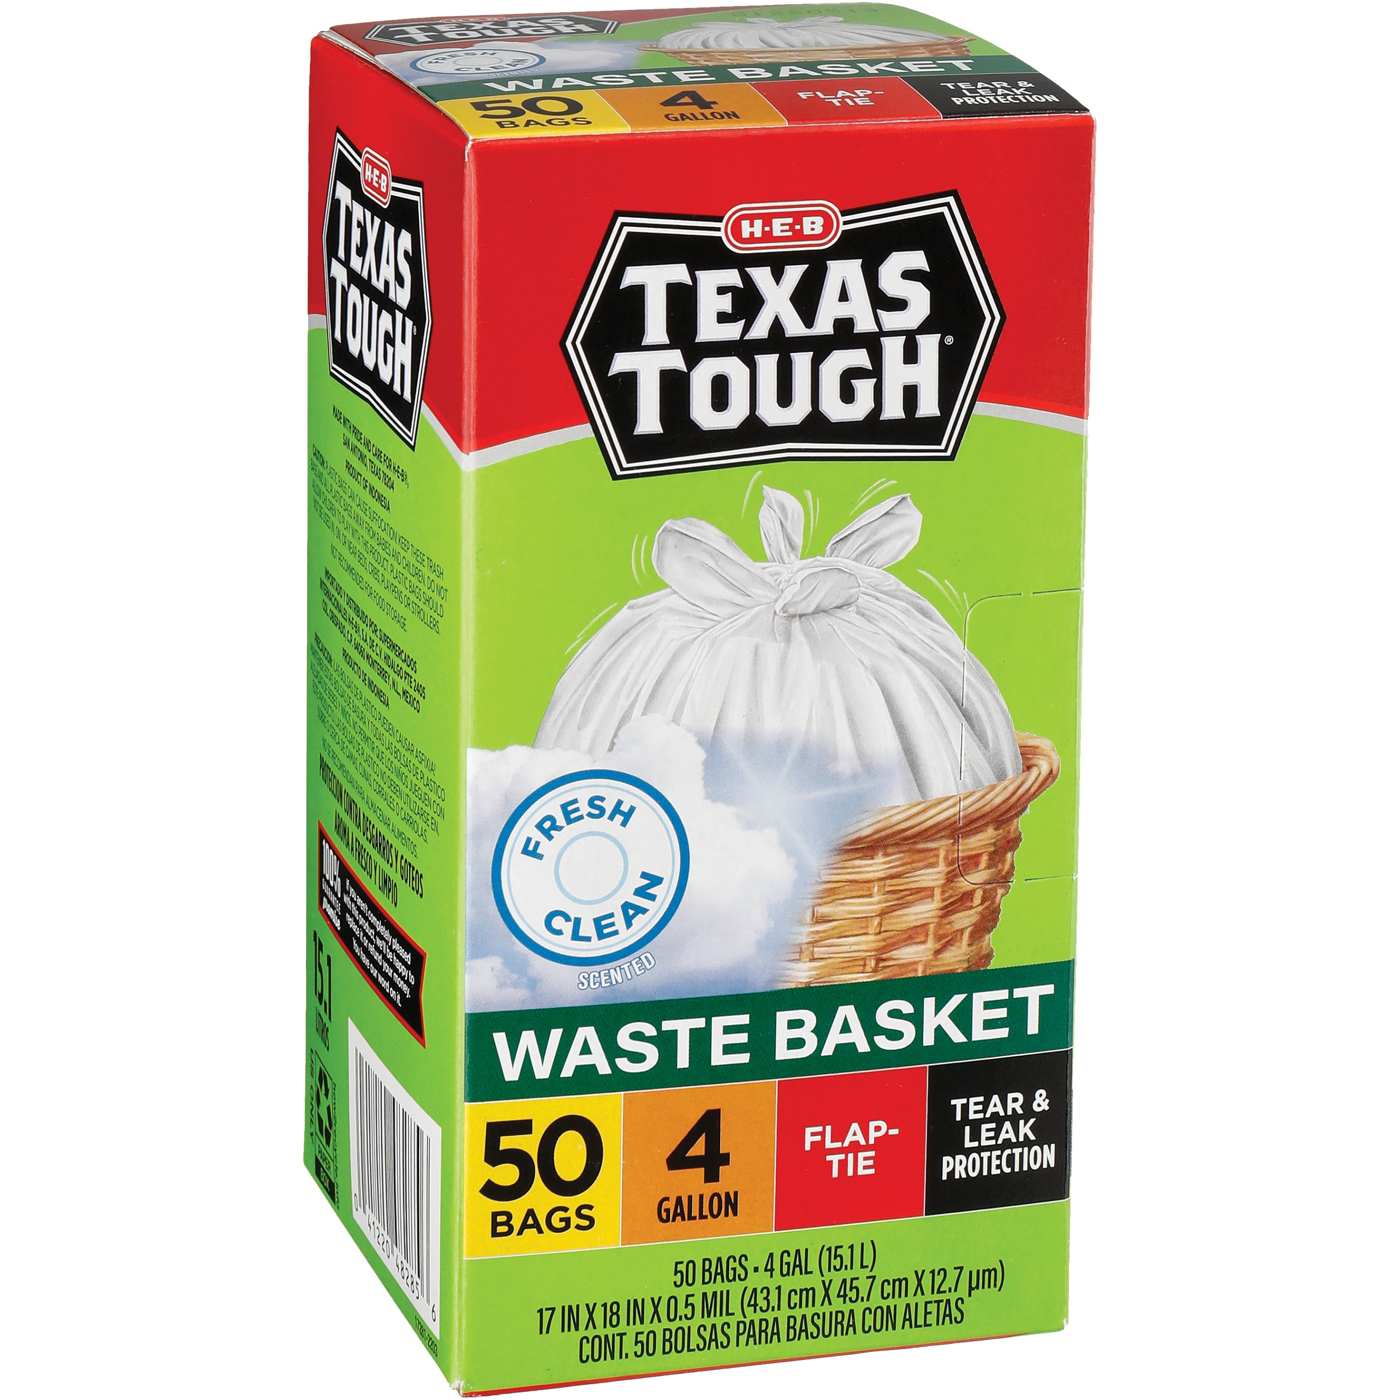 H-E-B Texas Tough Tall Kitchen Trash Bags, 13 Gallon - Fresh Scent - Shop Trash  Bags at H-E-B